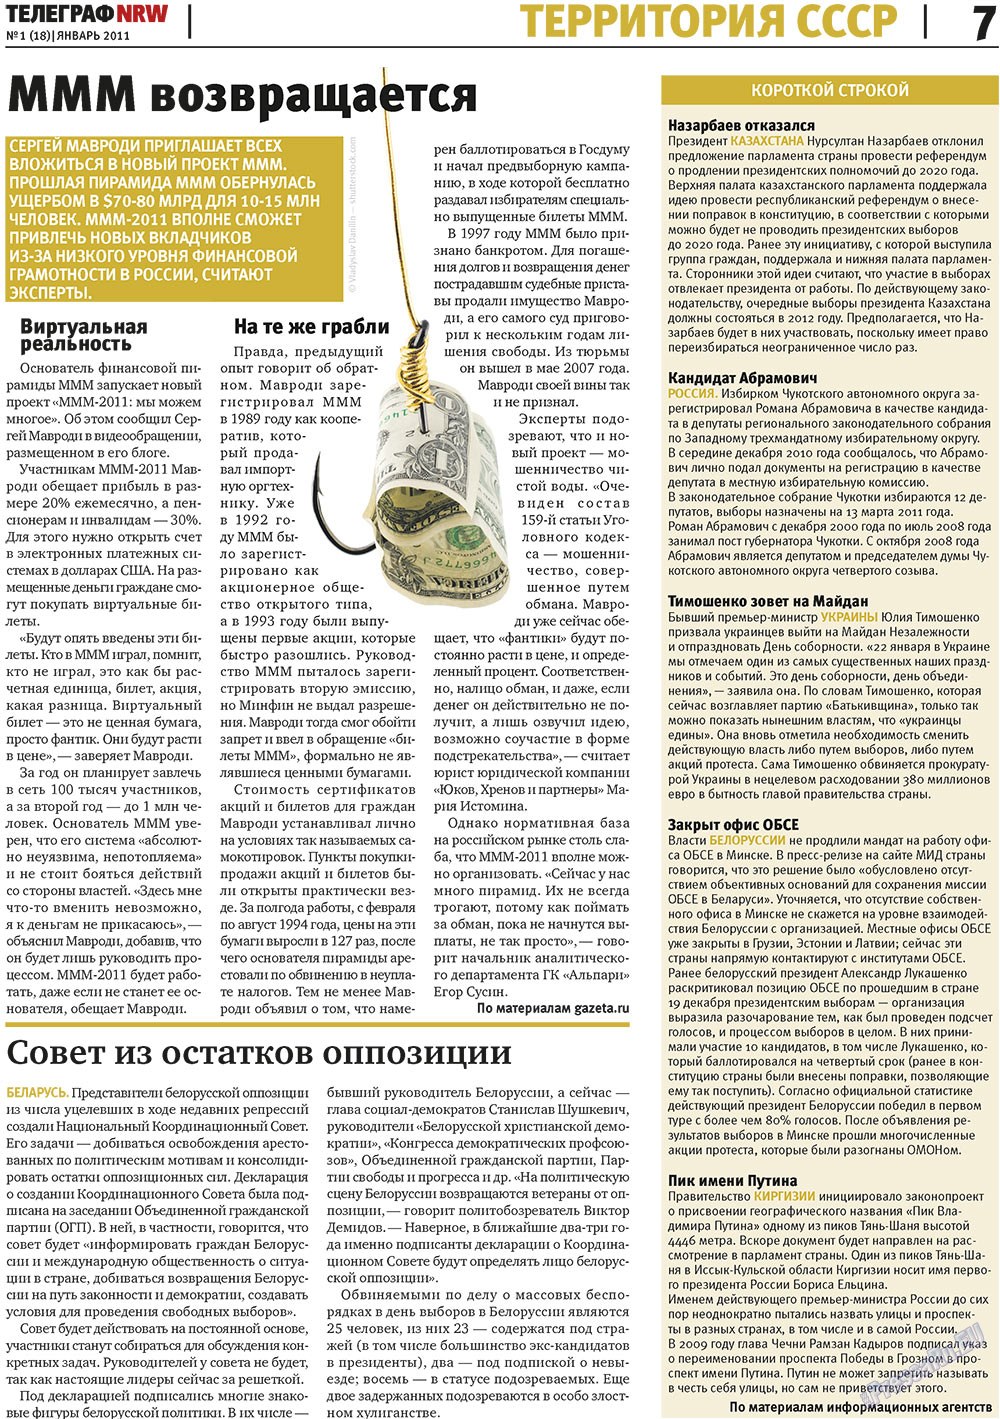 Телеграф NRW (газета). 2011 год, номер 1, стр. 7